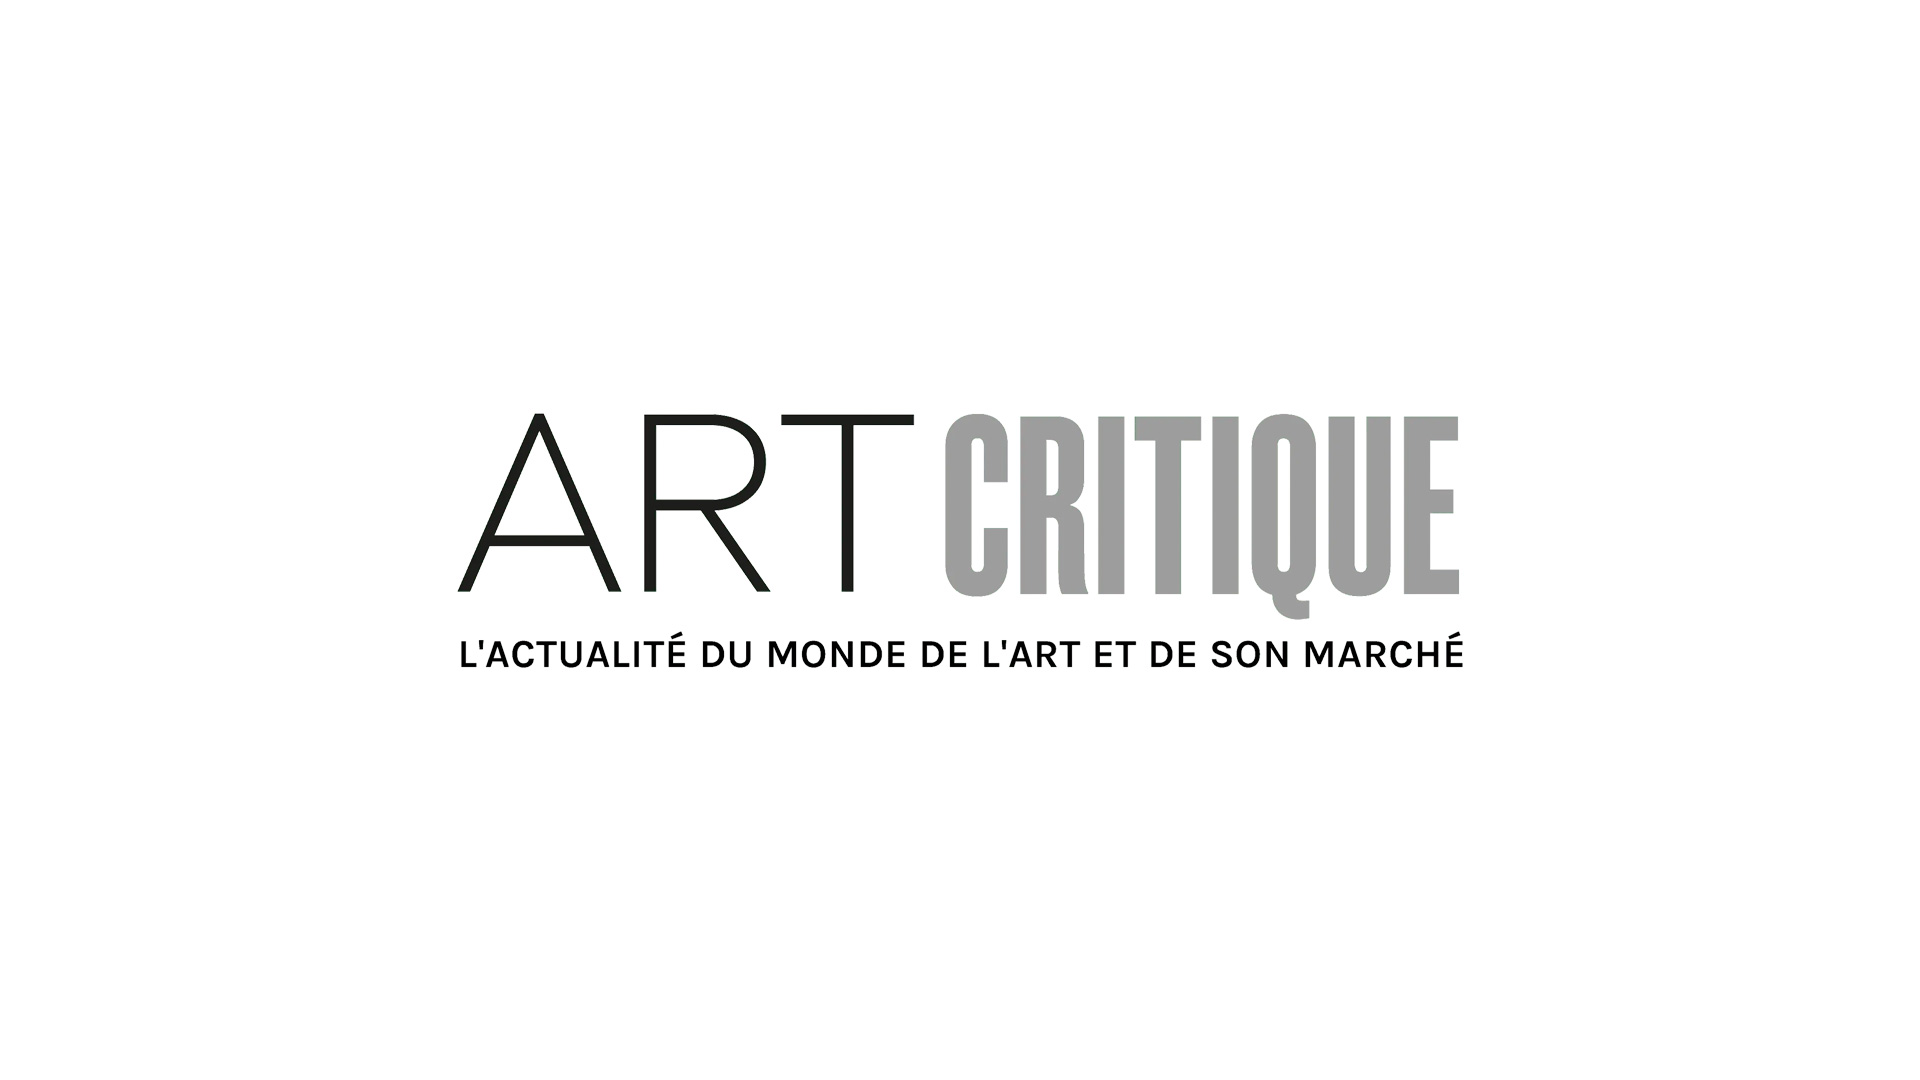 Le marché de l’art est florissant en France